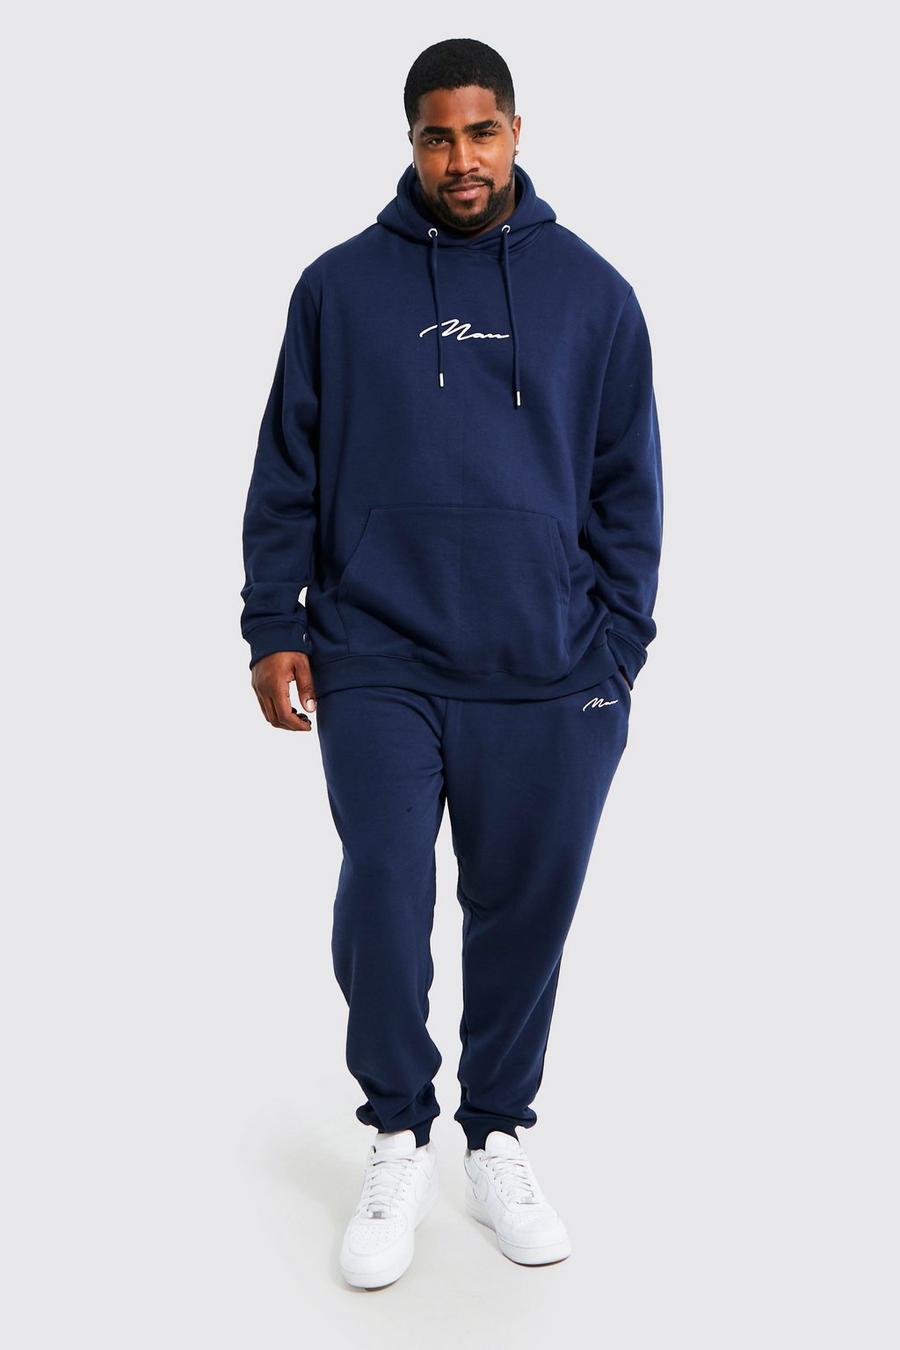 Tuta sportiva Plus Size con scritta Man e cappuccio, Navy azul marino image number 1